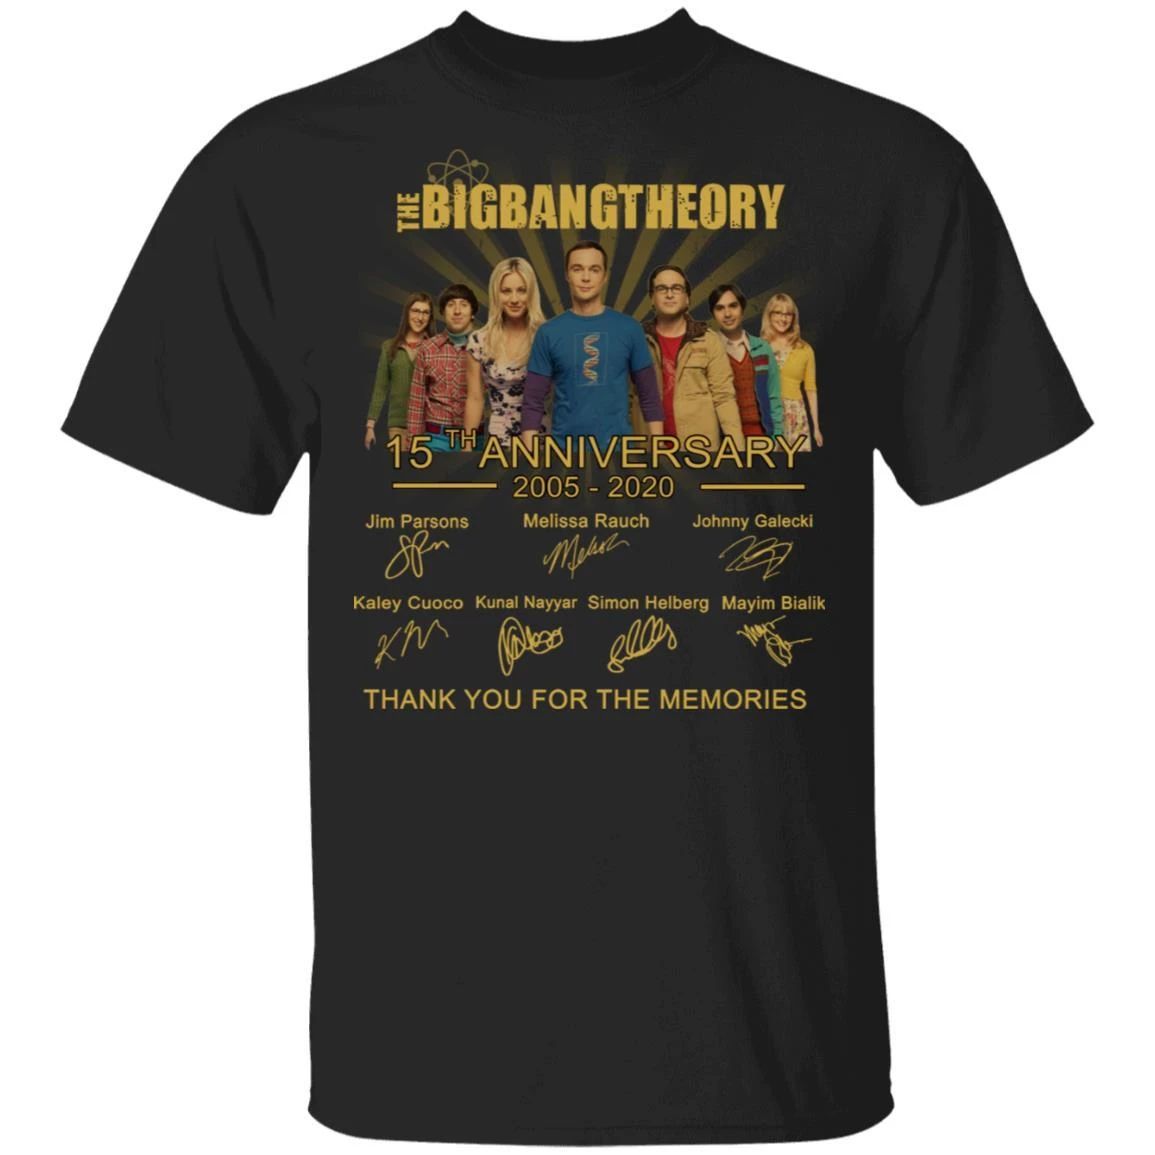 The Big Bang Theory T-shirt 15th Anniversary 2005 – 2020 Tee